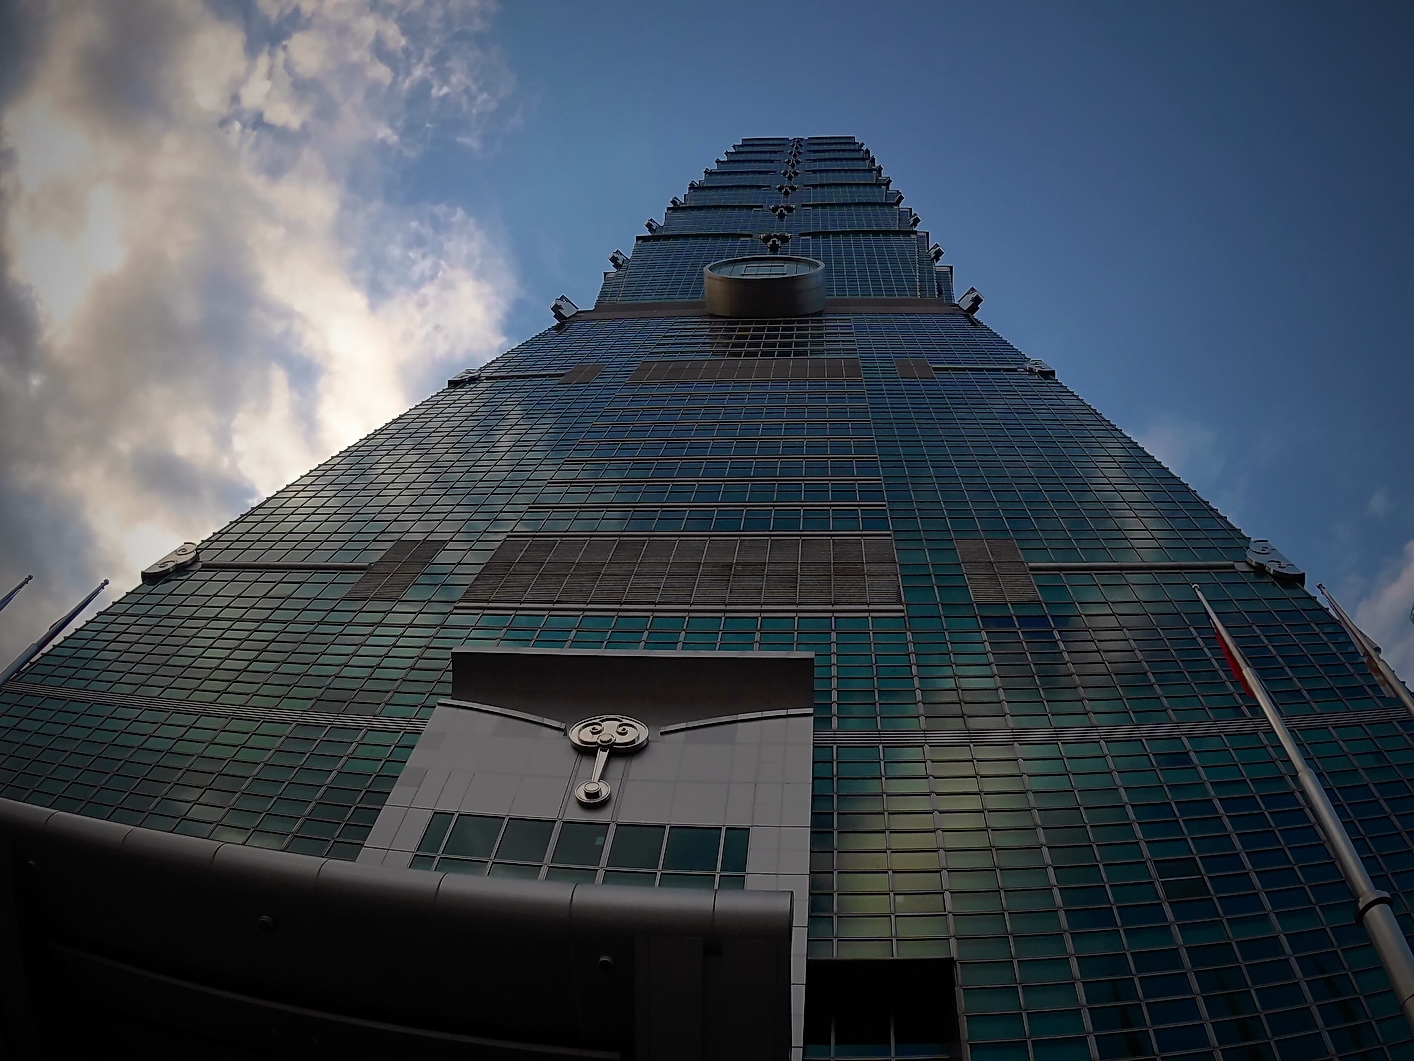 Tajvanról jelentjük! – Magyarok az OISTAT színháztechnikai világkiállításán – a világ egyik legmagasabb épülete, a Taipei 101